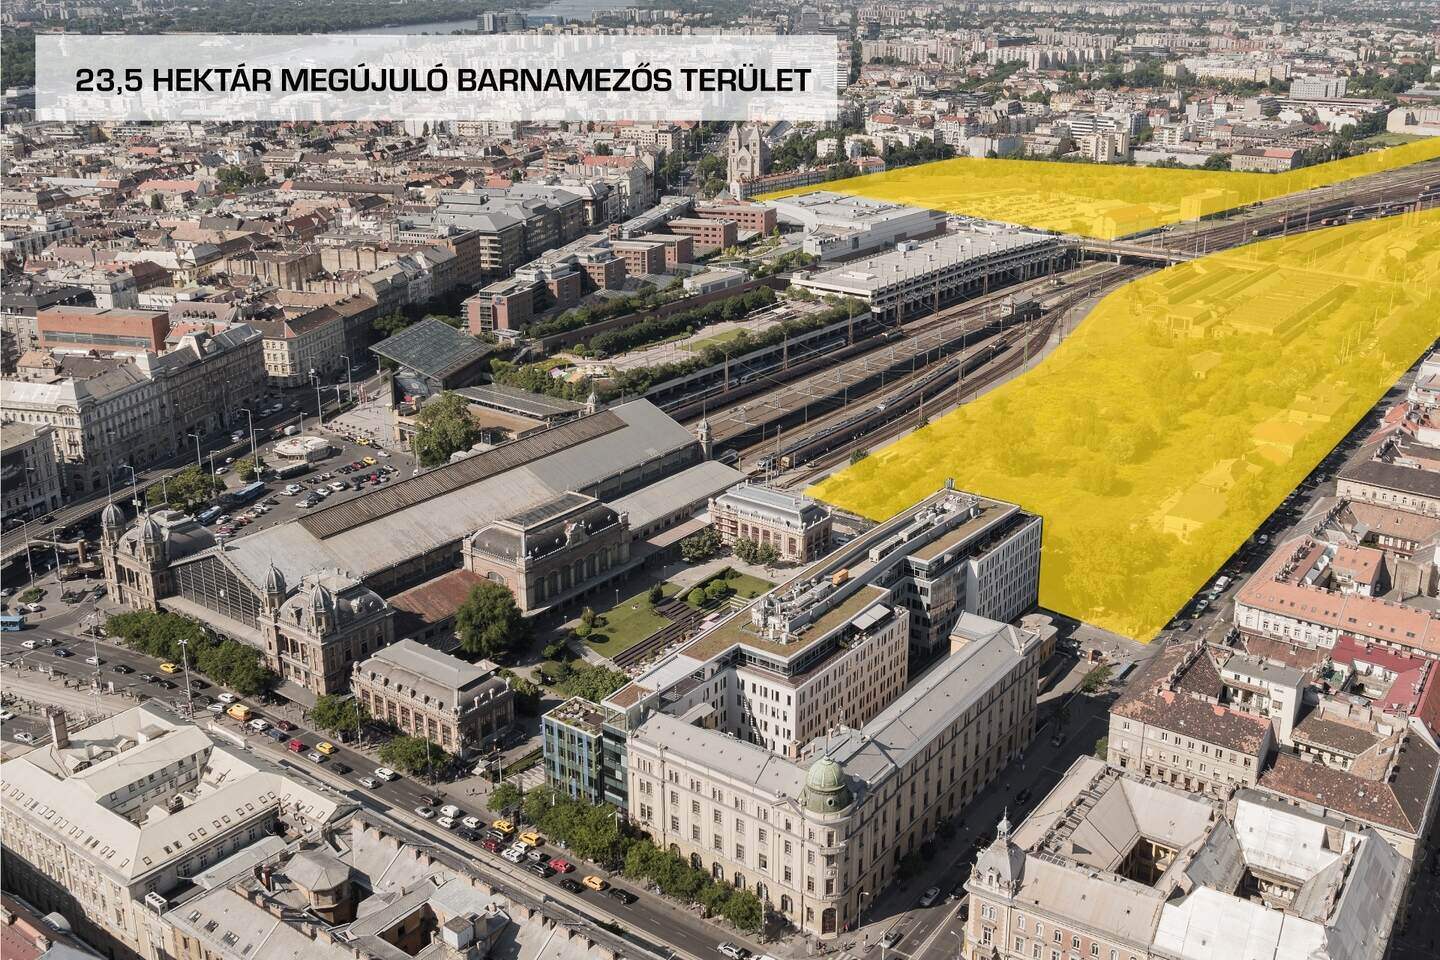 Nyugati-stazione-ferroviaria-Budapest-ristrutturazione-sviluppo